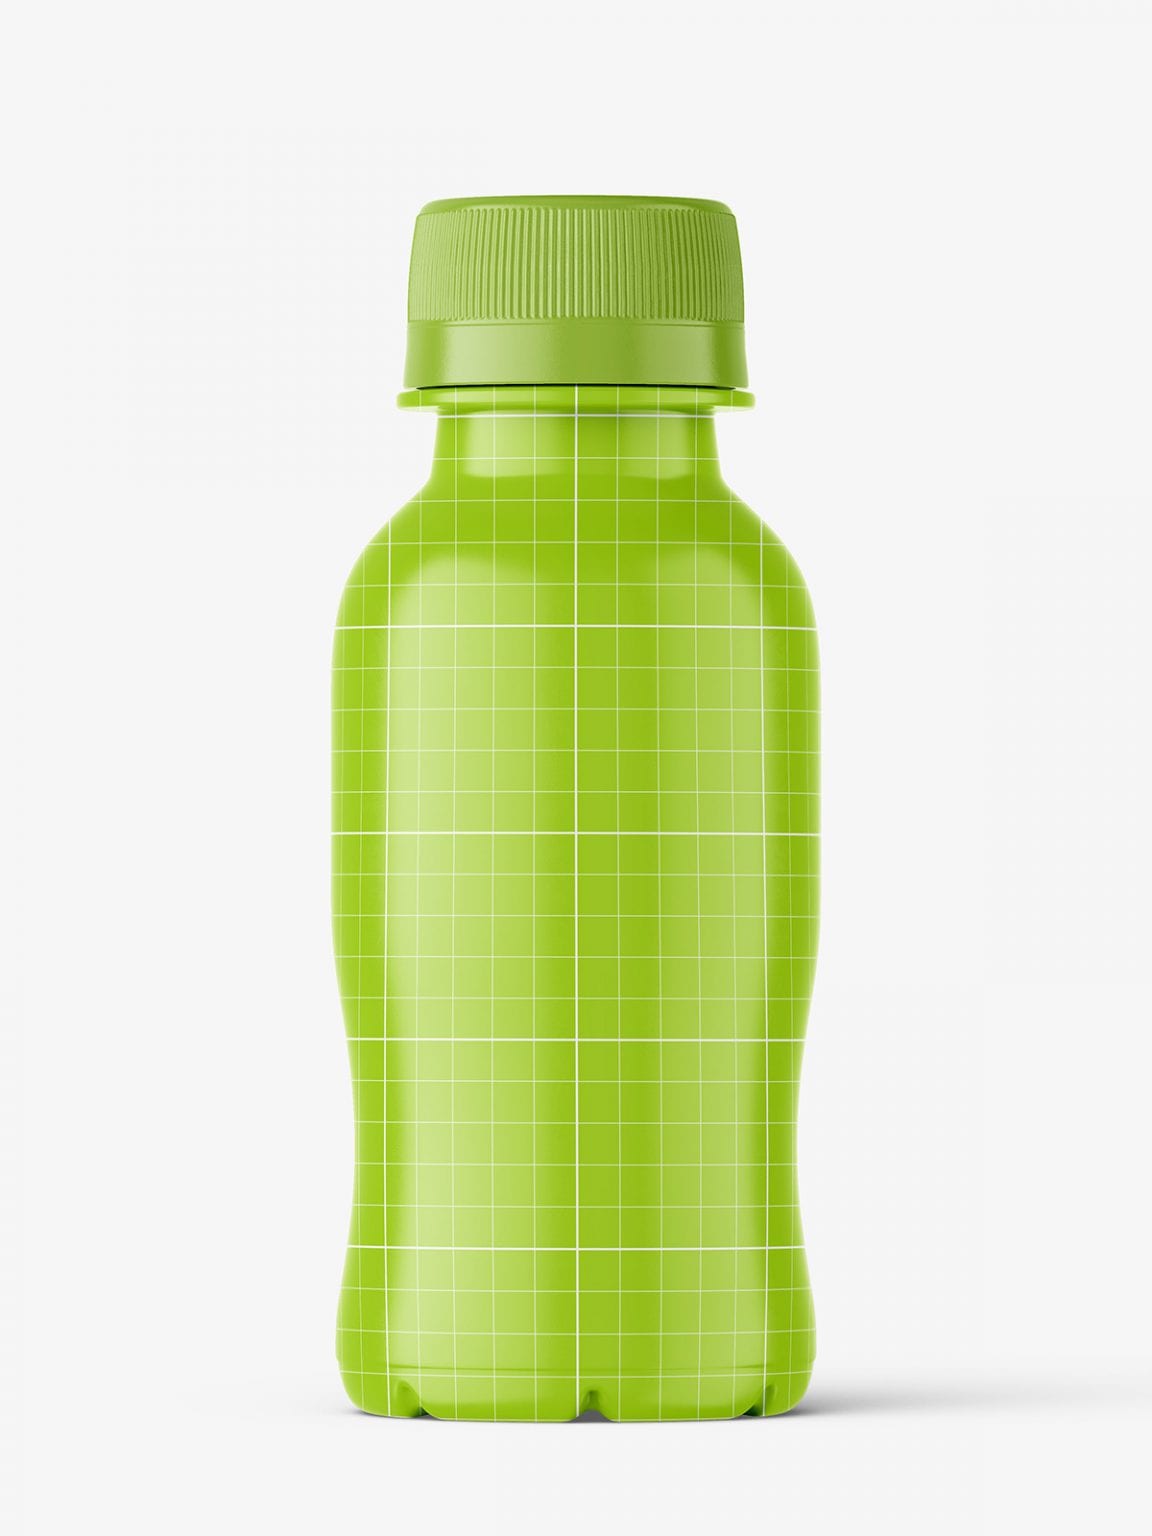 Download Glossy juice bottle mockup - Smarty Mockups